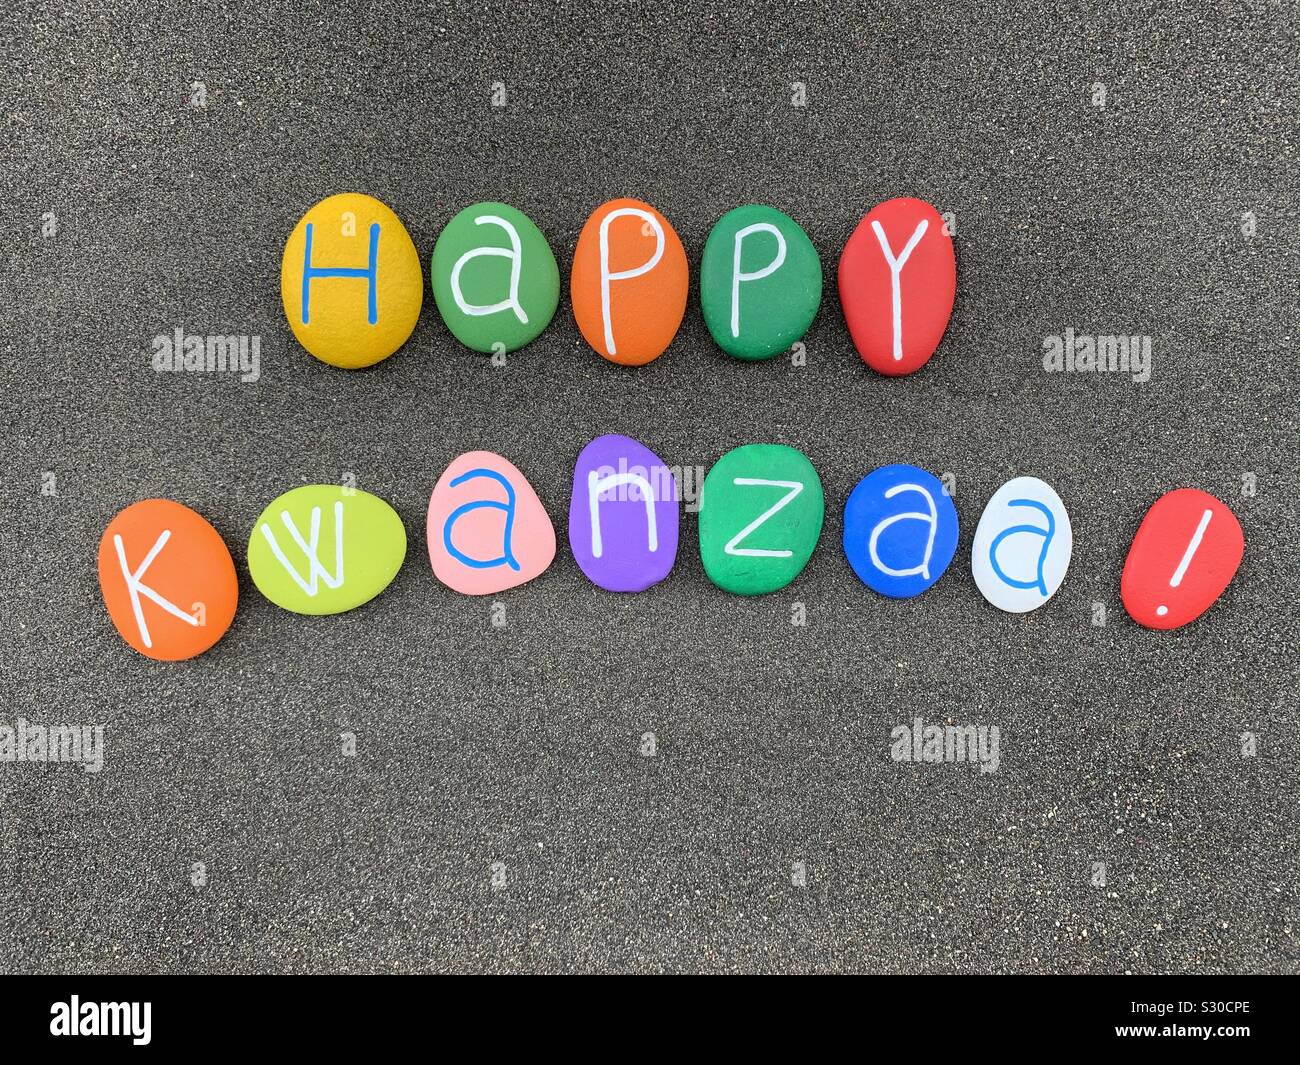 Happy Kwanzaa, celebrazione annuale negli Stati Uniti d'America in onore di eredità africana dal 26 Dicembre al 1 Gennaio Foto Stock